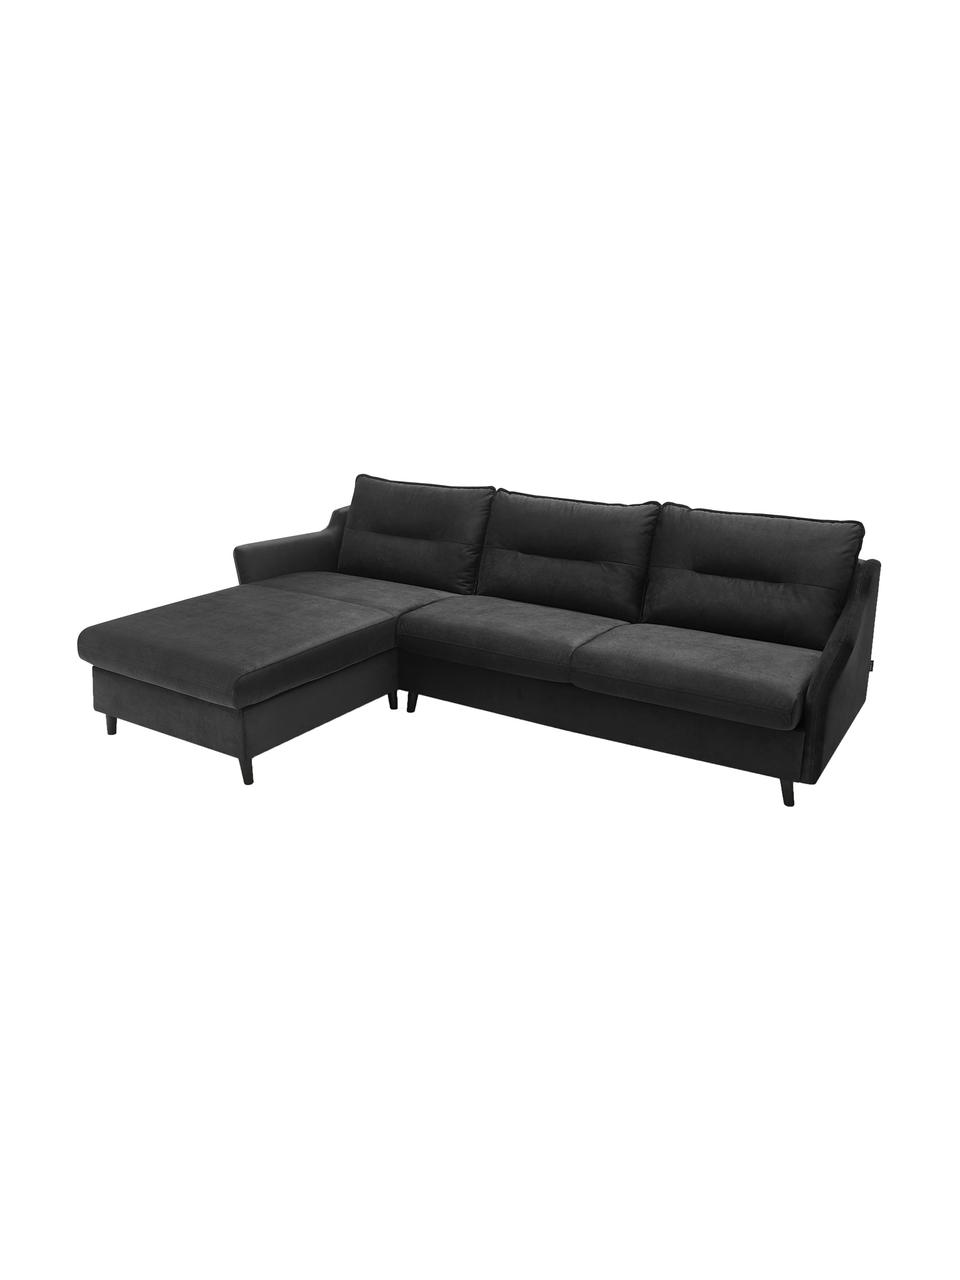 Sofa narożna z funkcją spania z aksamitu Loft, Tapicerka: 100% aksamit poliestrowy, Nogi: metal lakierowany, Ciemny szary, S 275 x G 181 cm